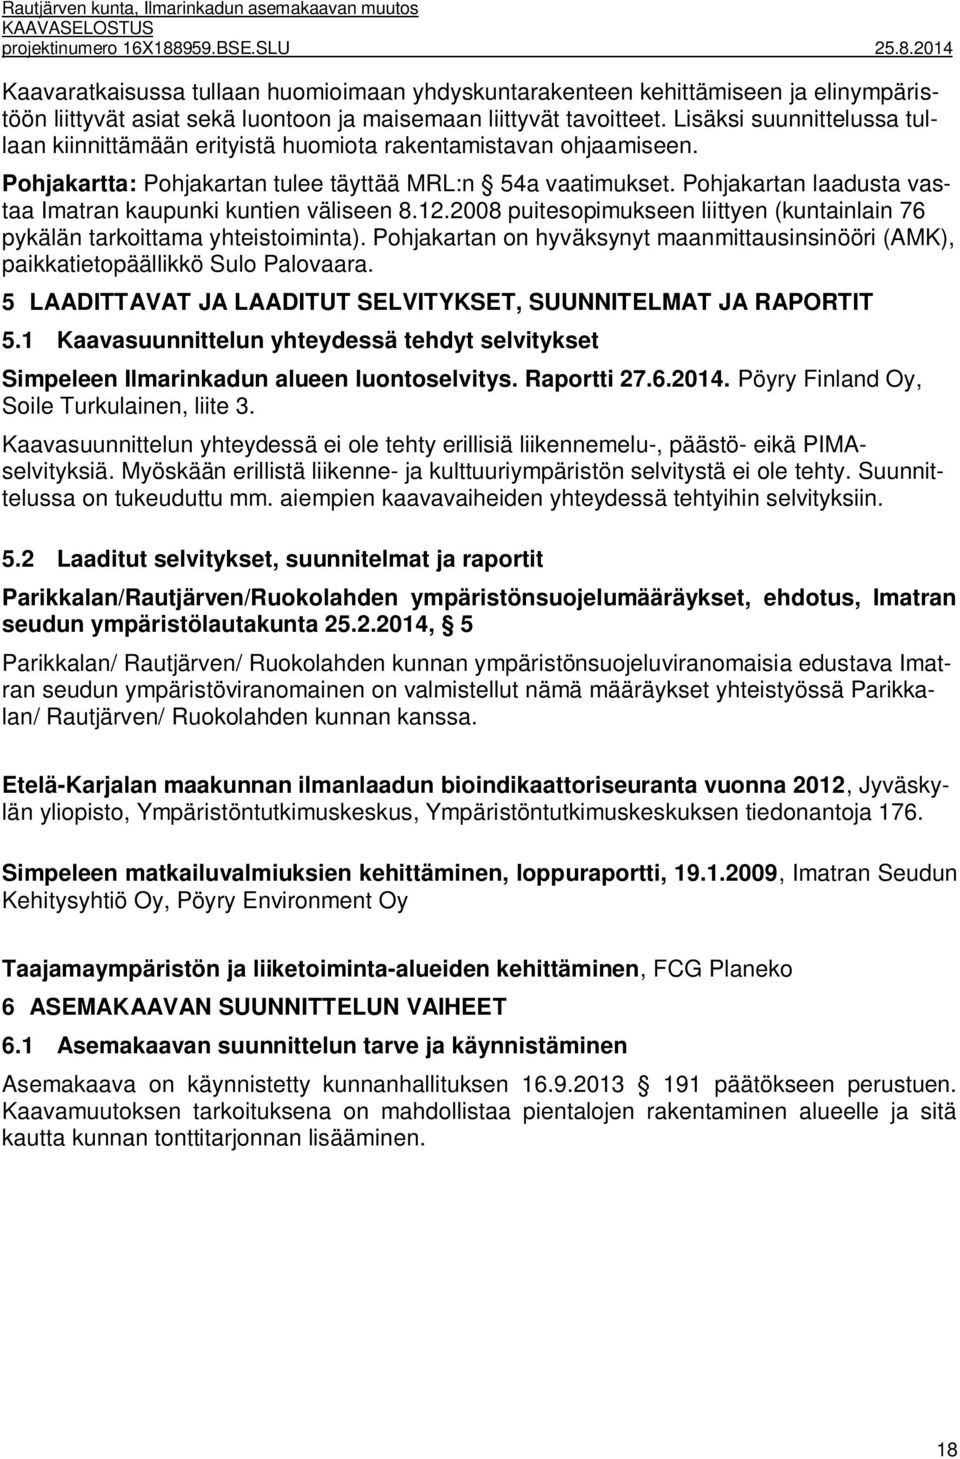 Pohjakartan laadusta vastaa Imatran kaupunki kuntien väliseen 8.12.2008 puitesopimukseen liittyen (kuntainlain 76 pykälän tarkoittama yhteistoiminta).